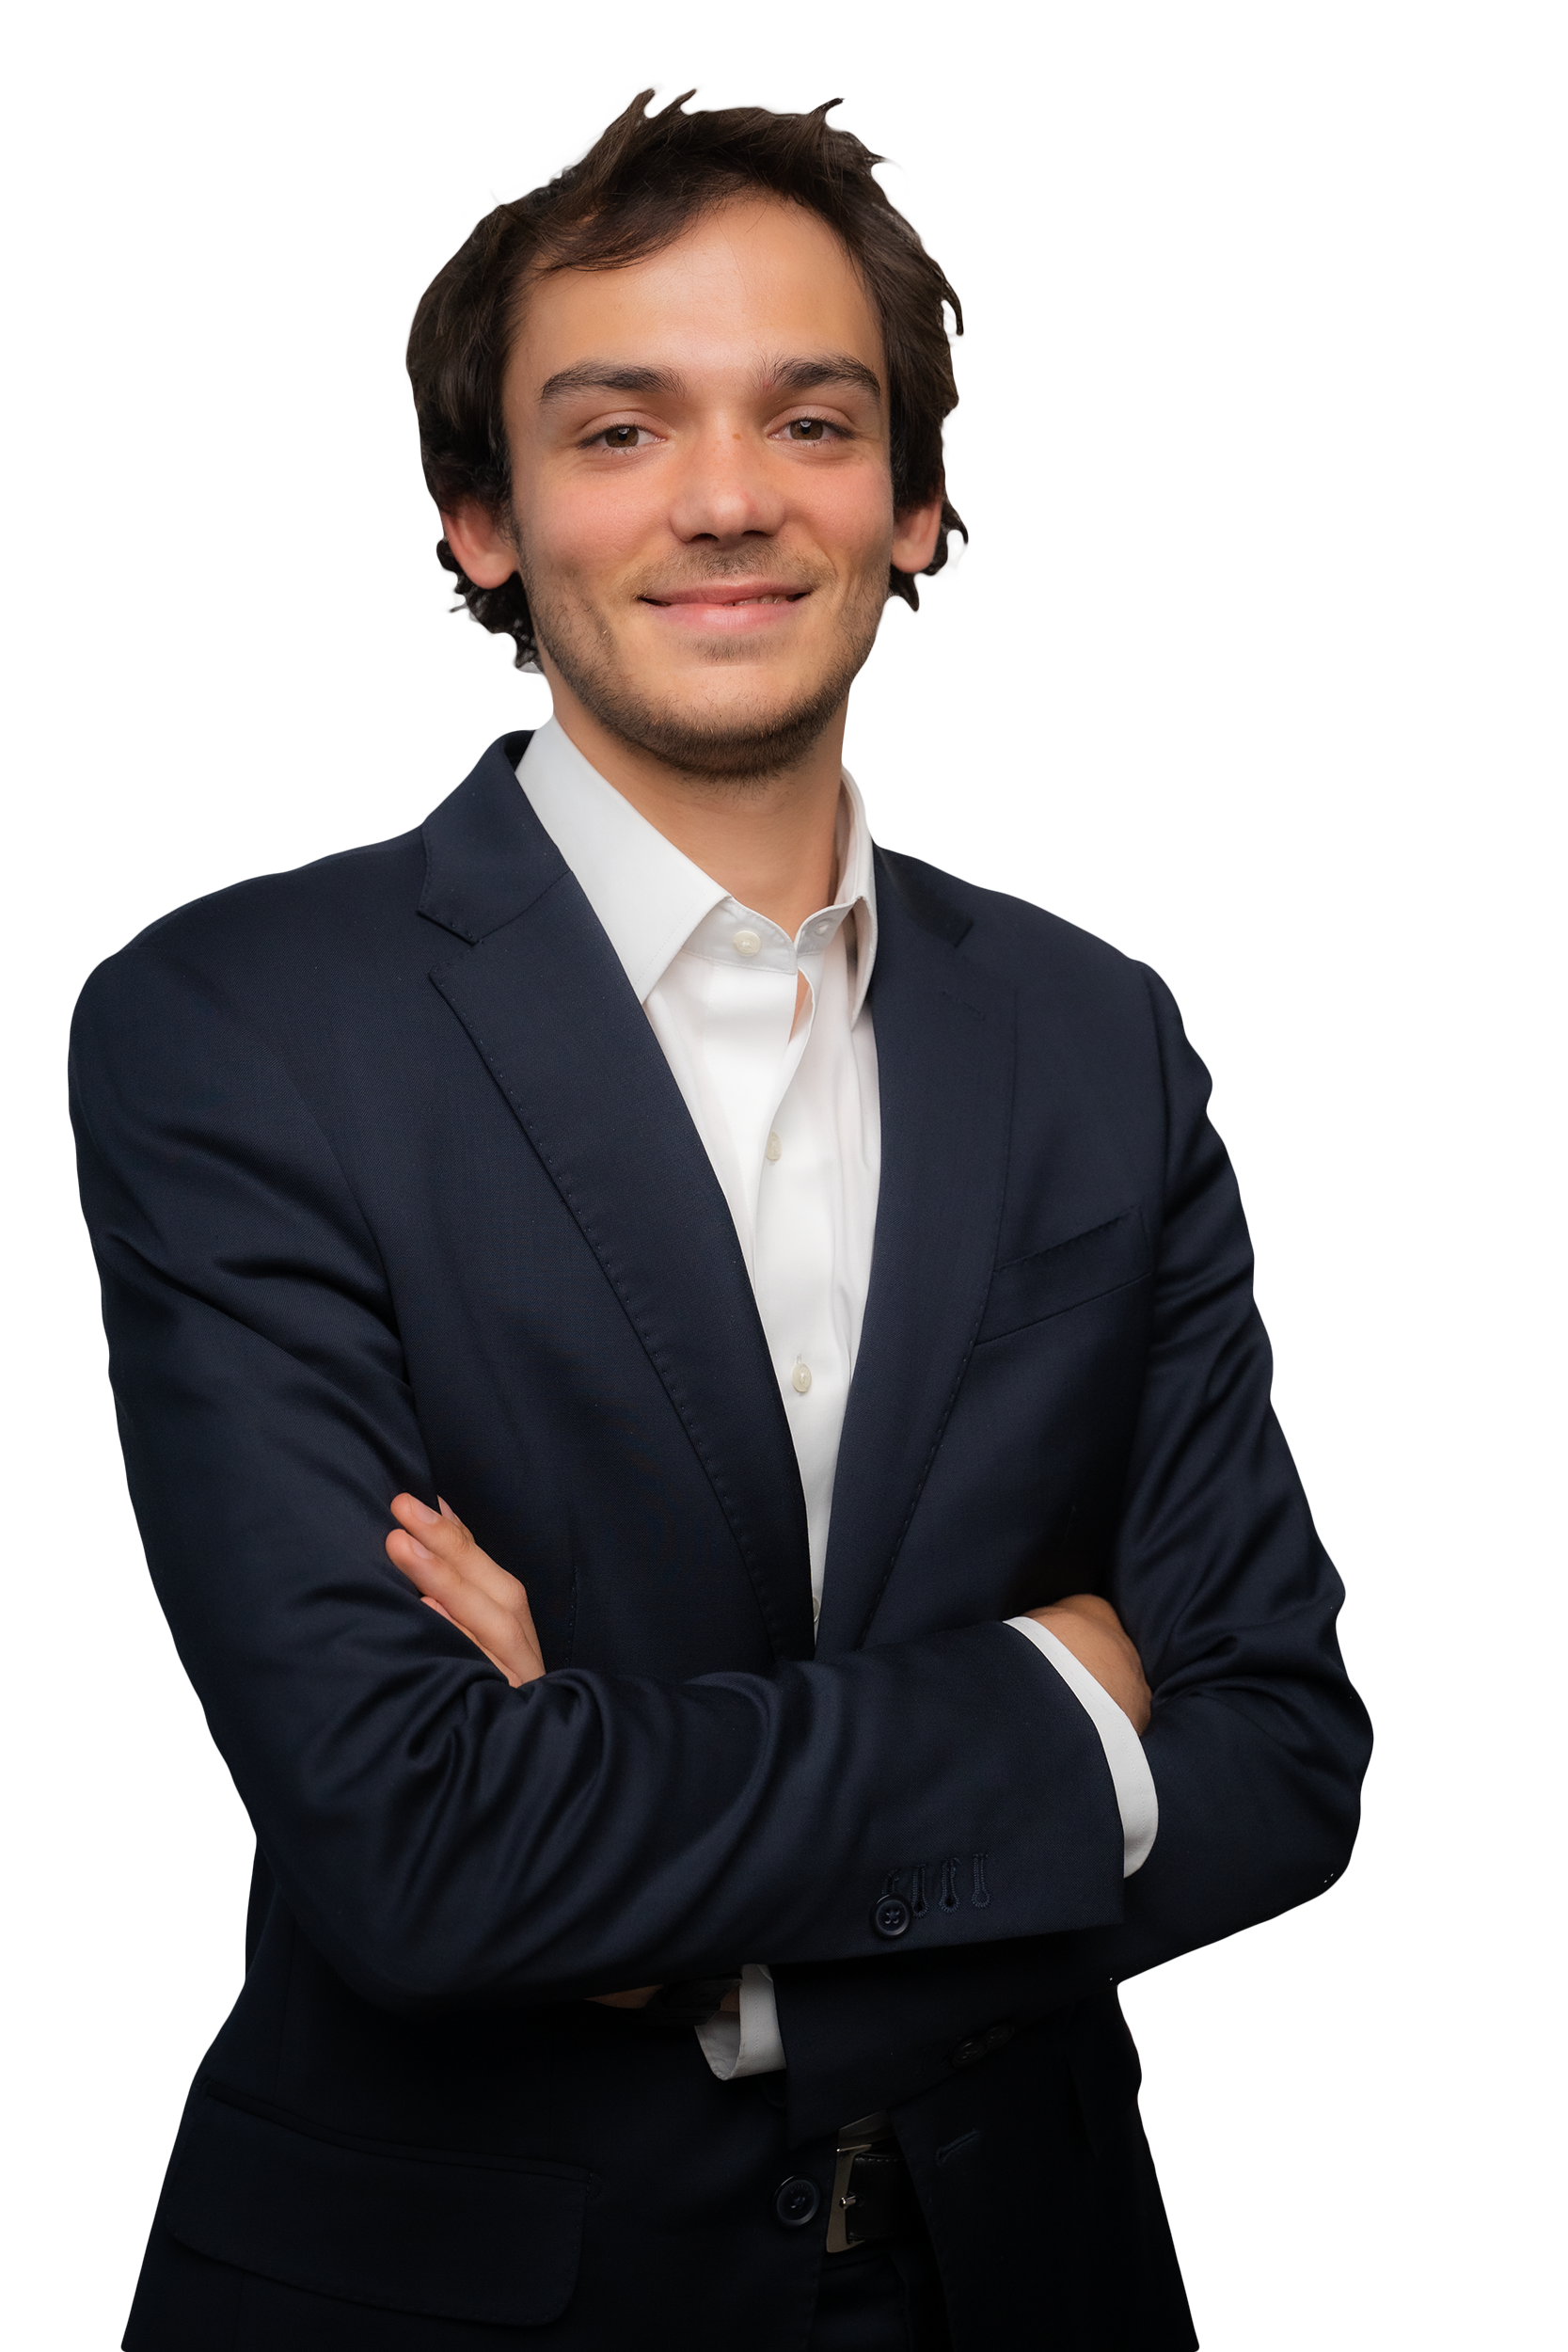 Pietro BrunelliJunior Investment Analyst